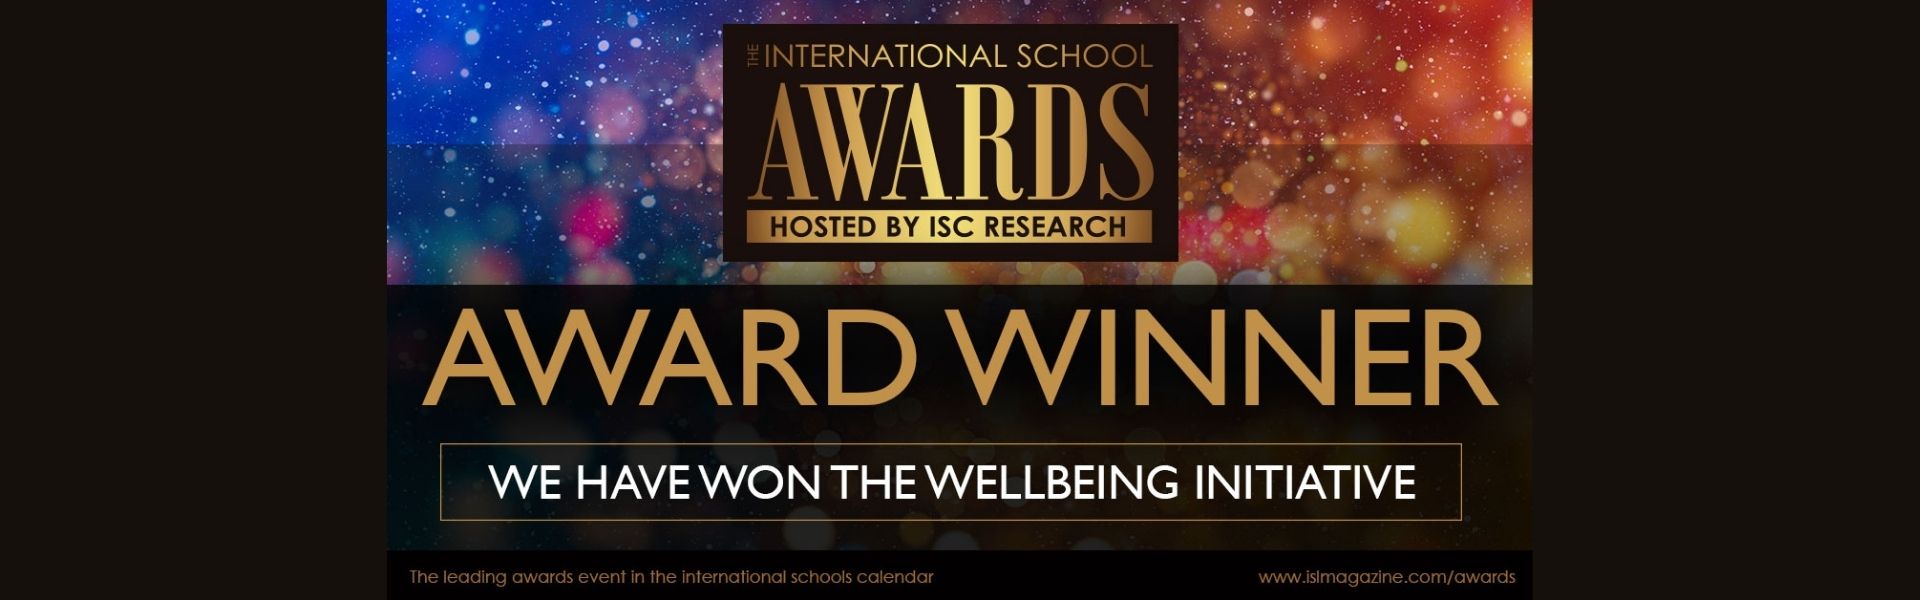 Award Winner Wellbeing